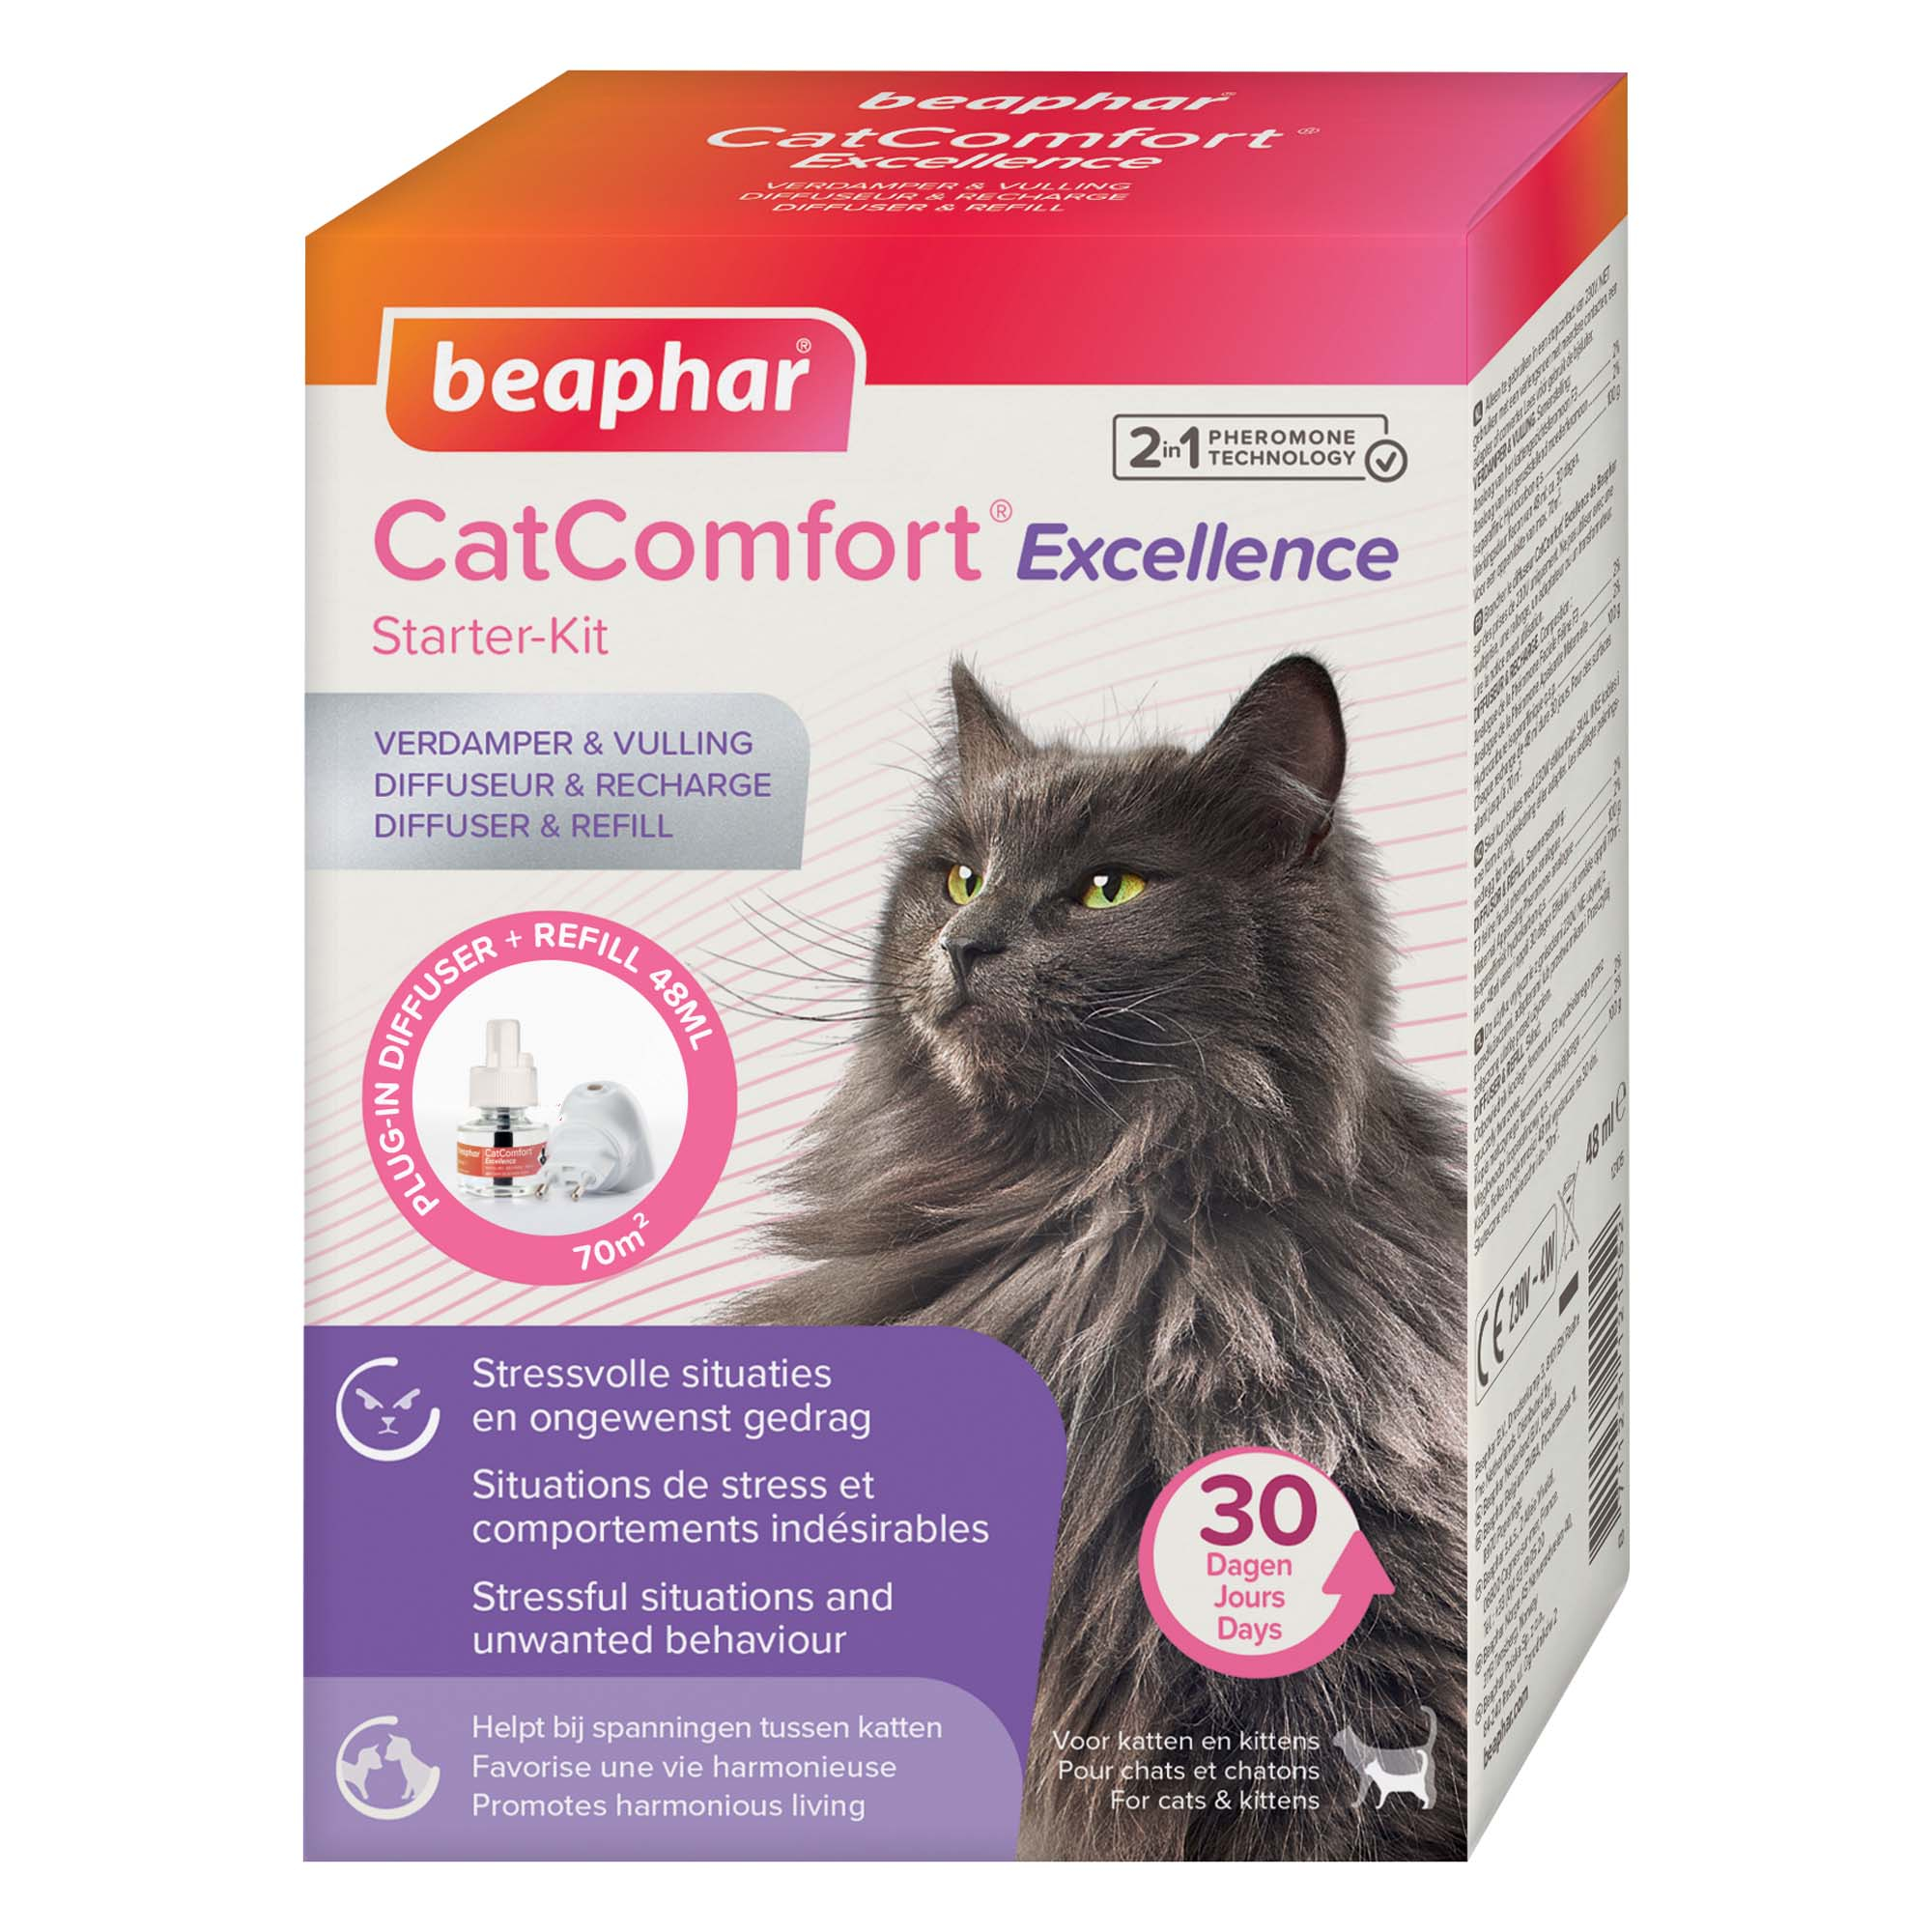 CATCOMFORT® EXCELLENCE, Diffonditore calmante e Ricarica con feromoni per gatti e gattini